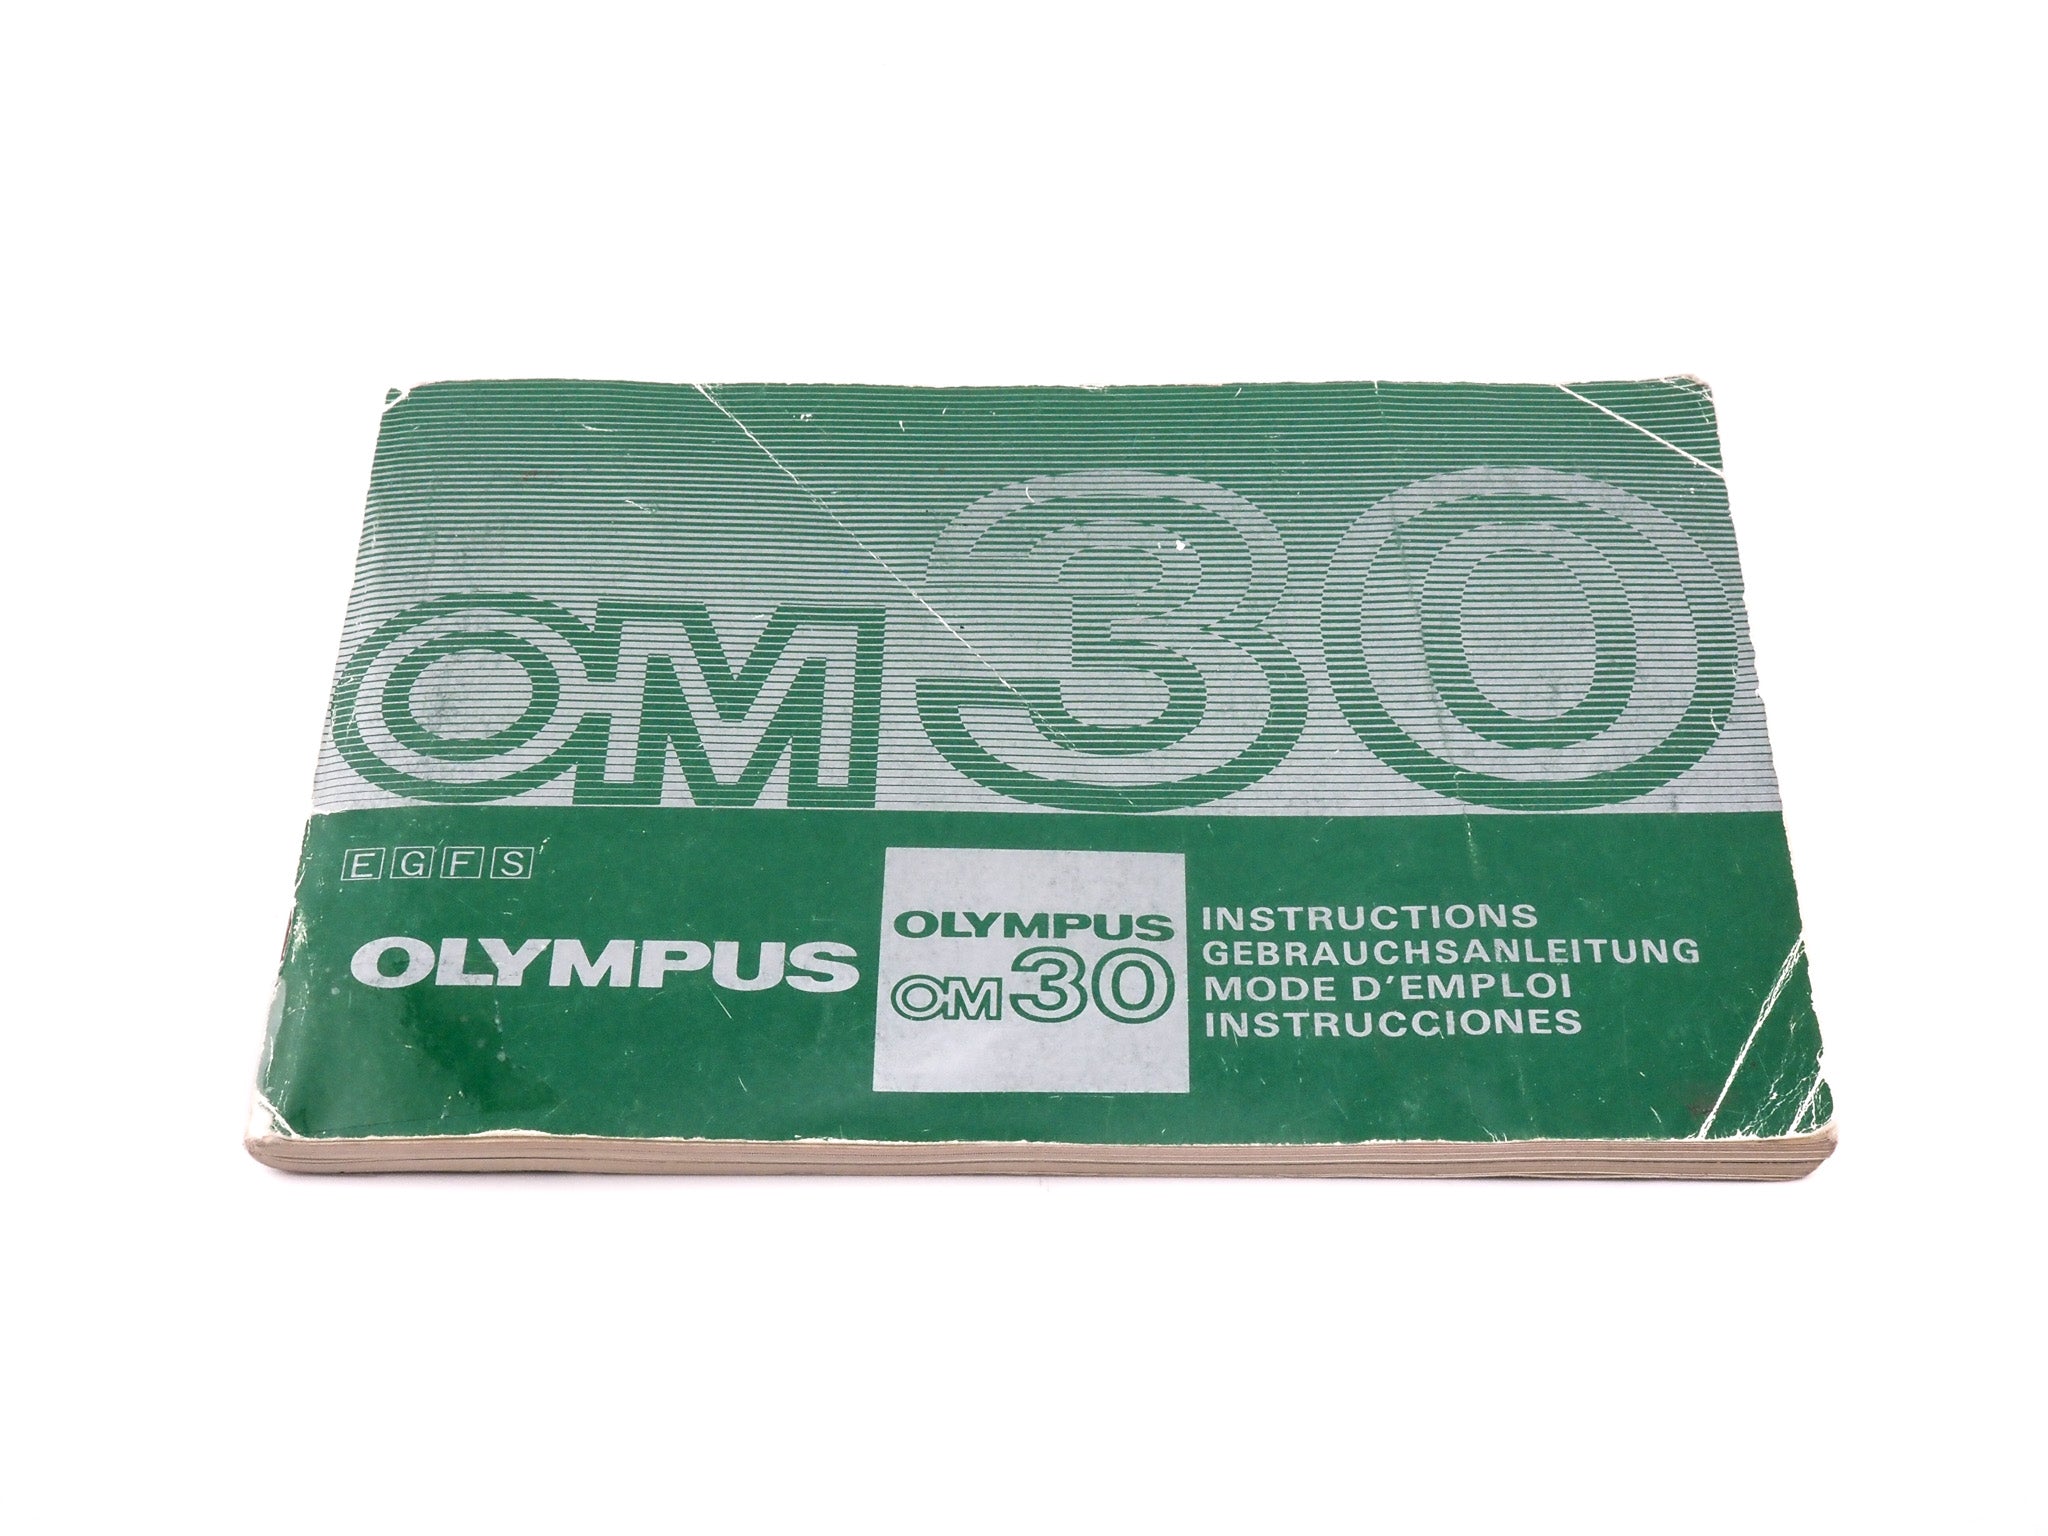 Olympus OM30 Instructions – Kamerastore